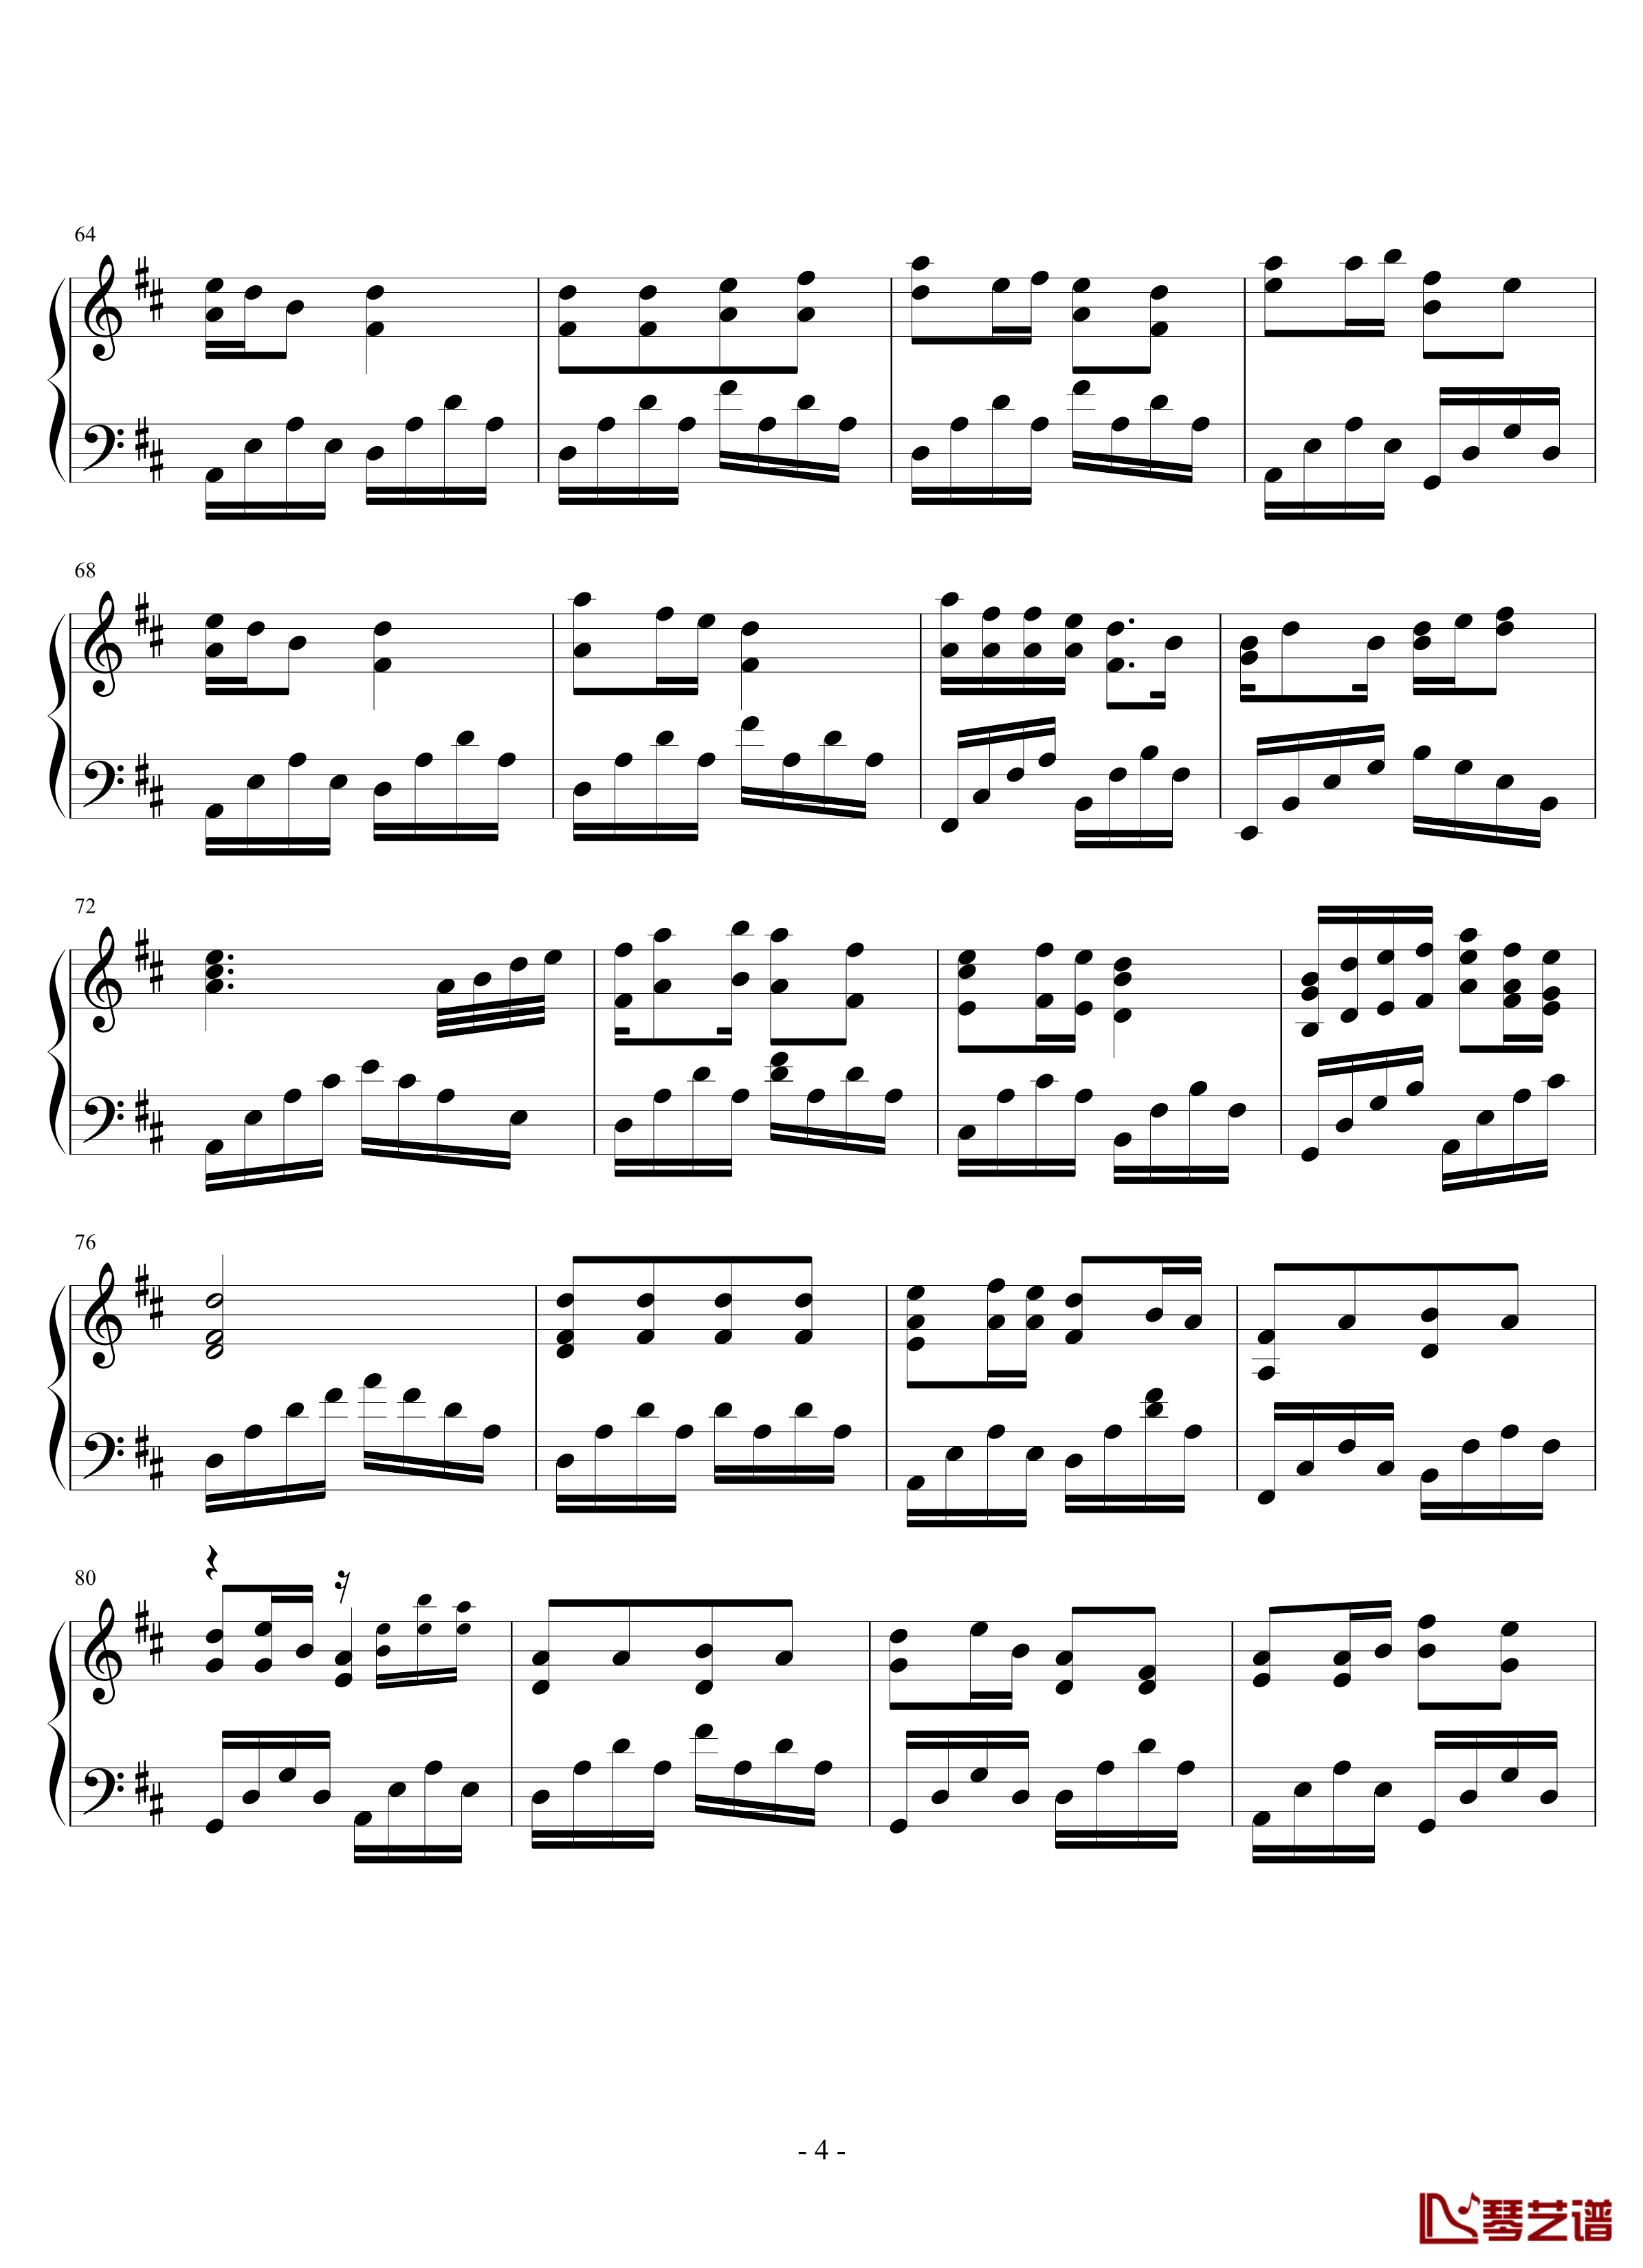 观音心赞钢琴谱-2.0完美版-佛教音乐4